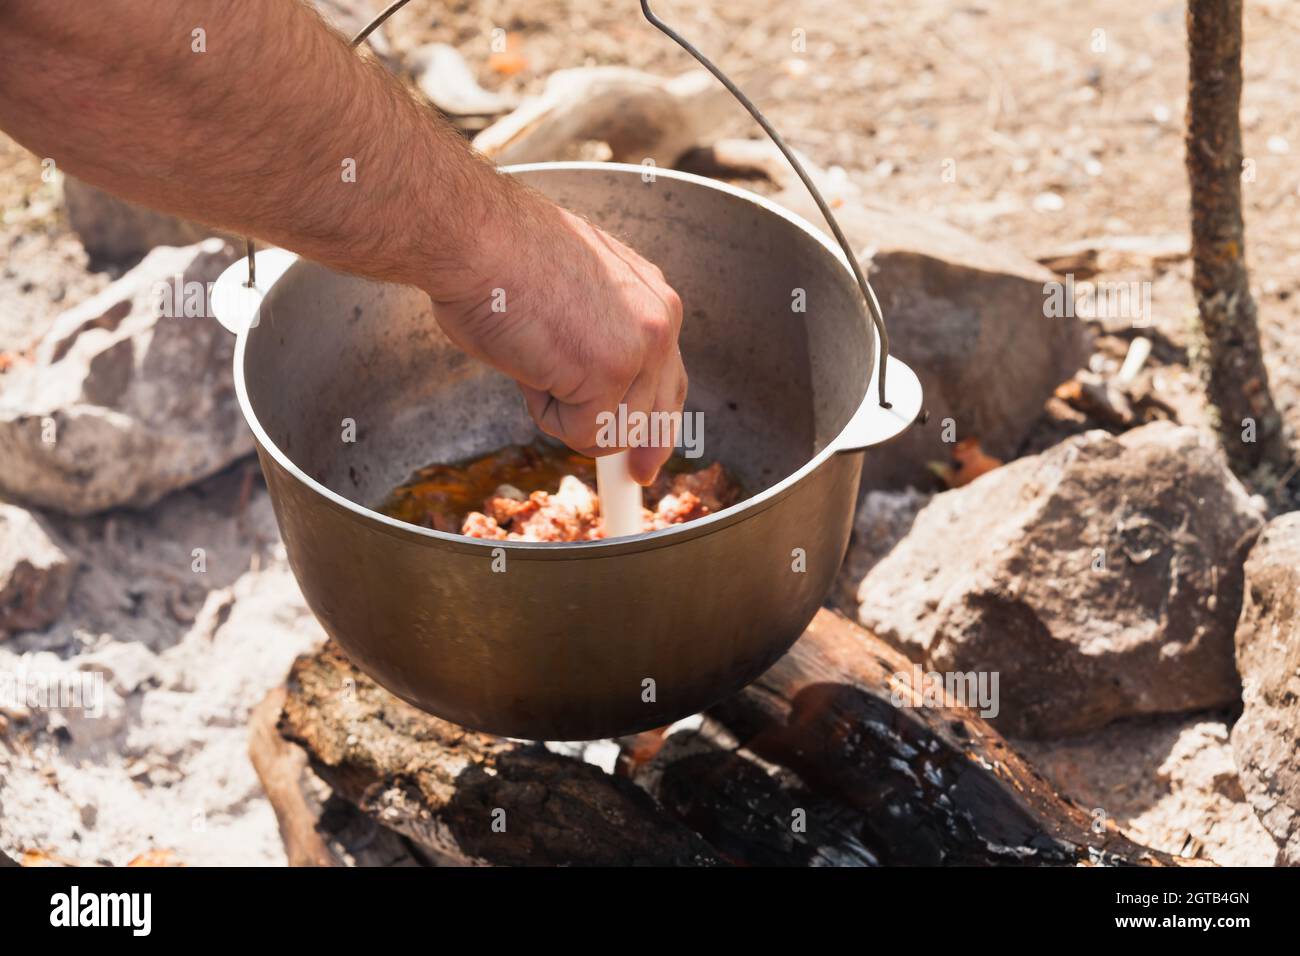 Männliche Hand, die Suppe in einem Kessel mischt. Die Vorbereitung der Mahlzeit auf dem offenen Feuer Stockfoto